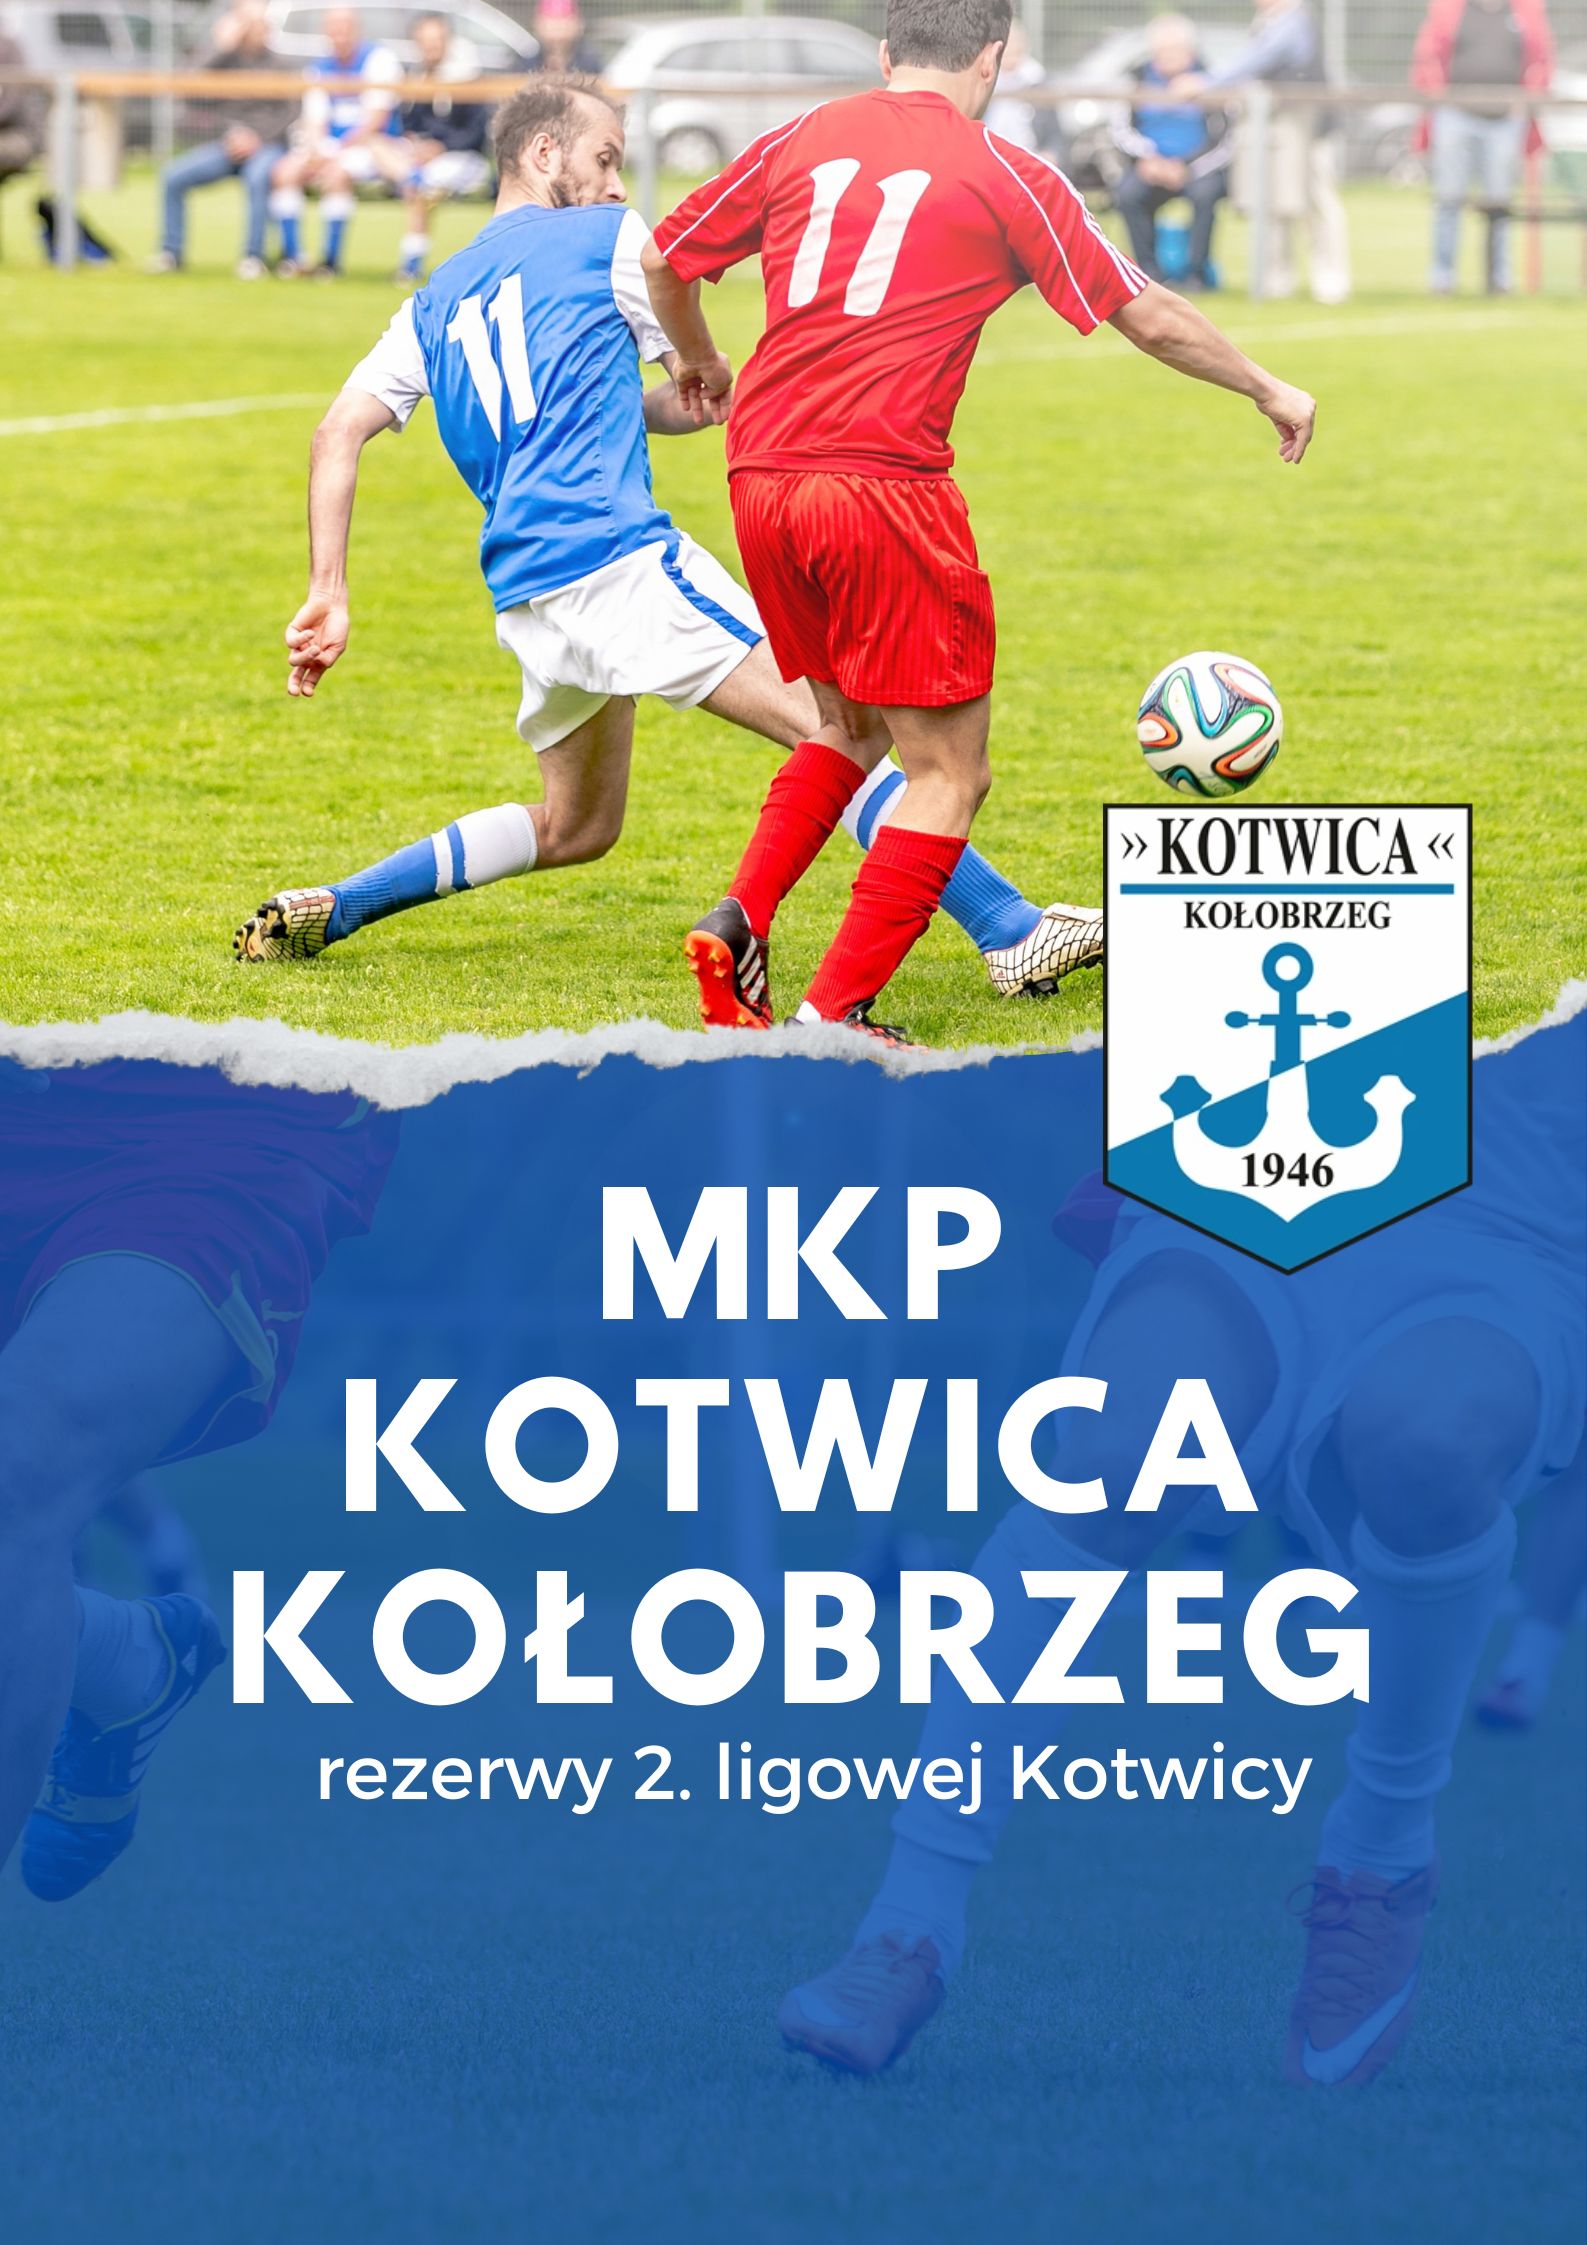 MKP Kotwica Kołobrzeg - klasa okręgowa